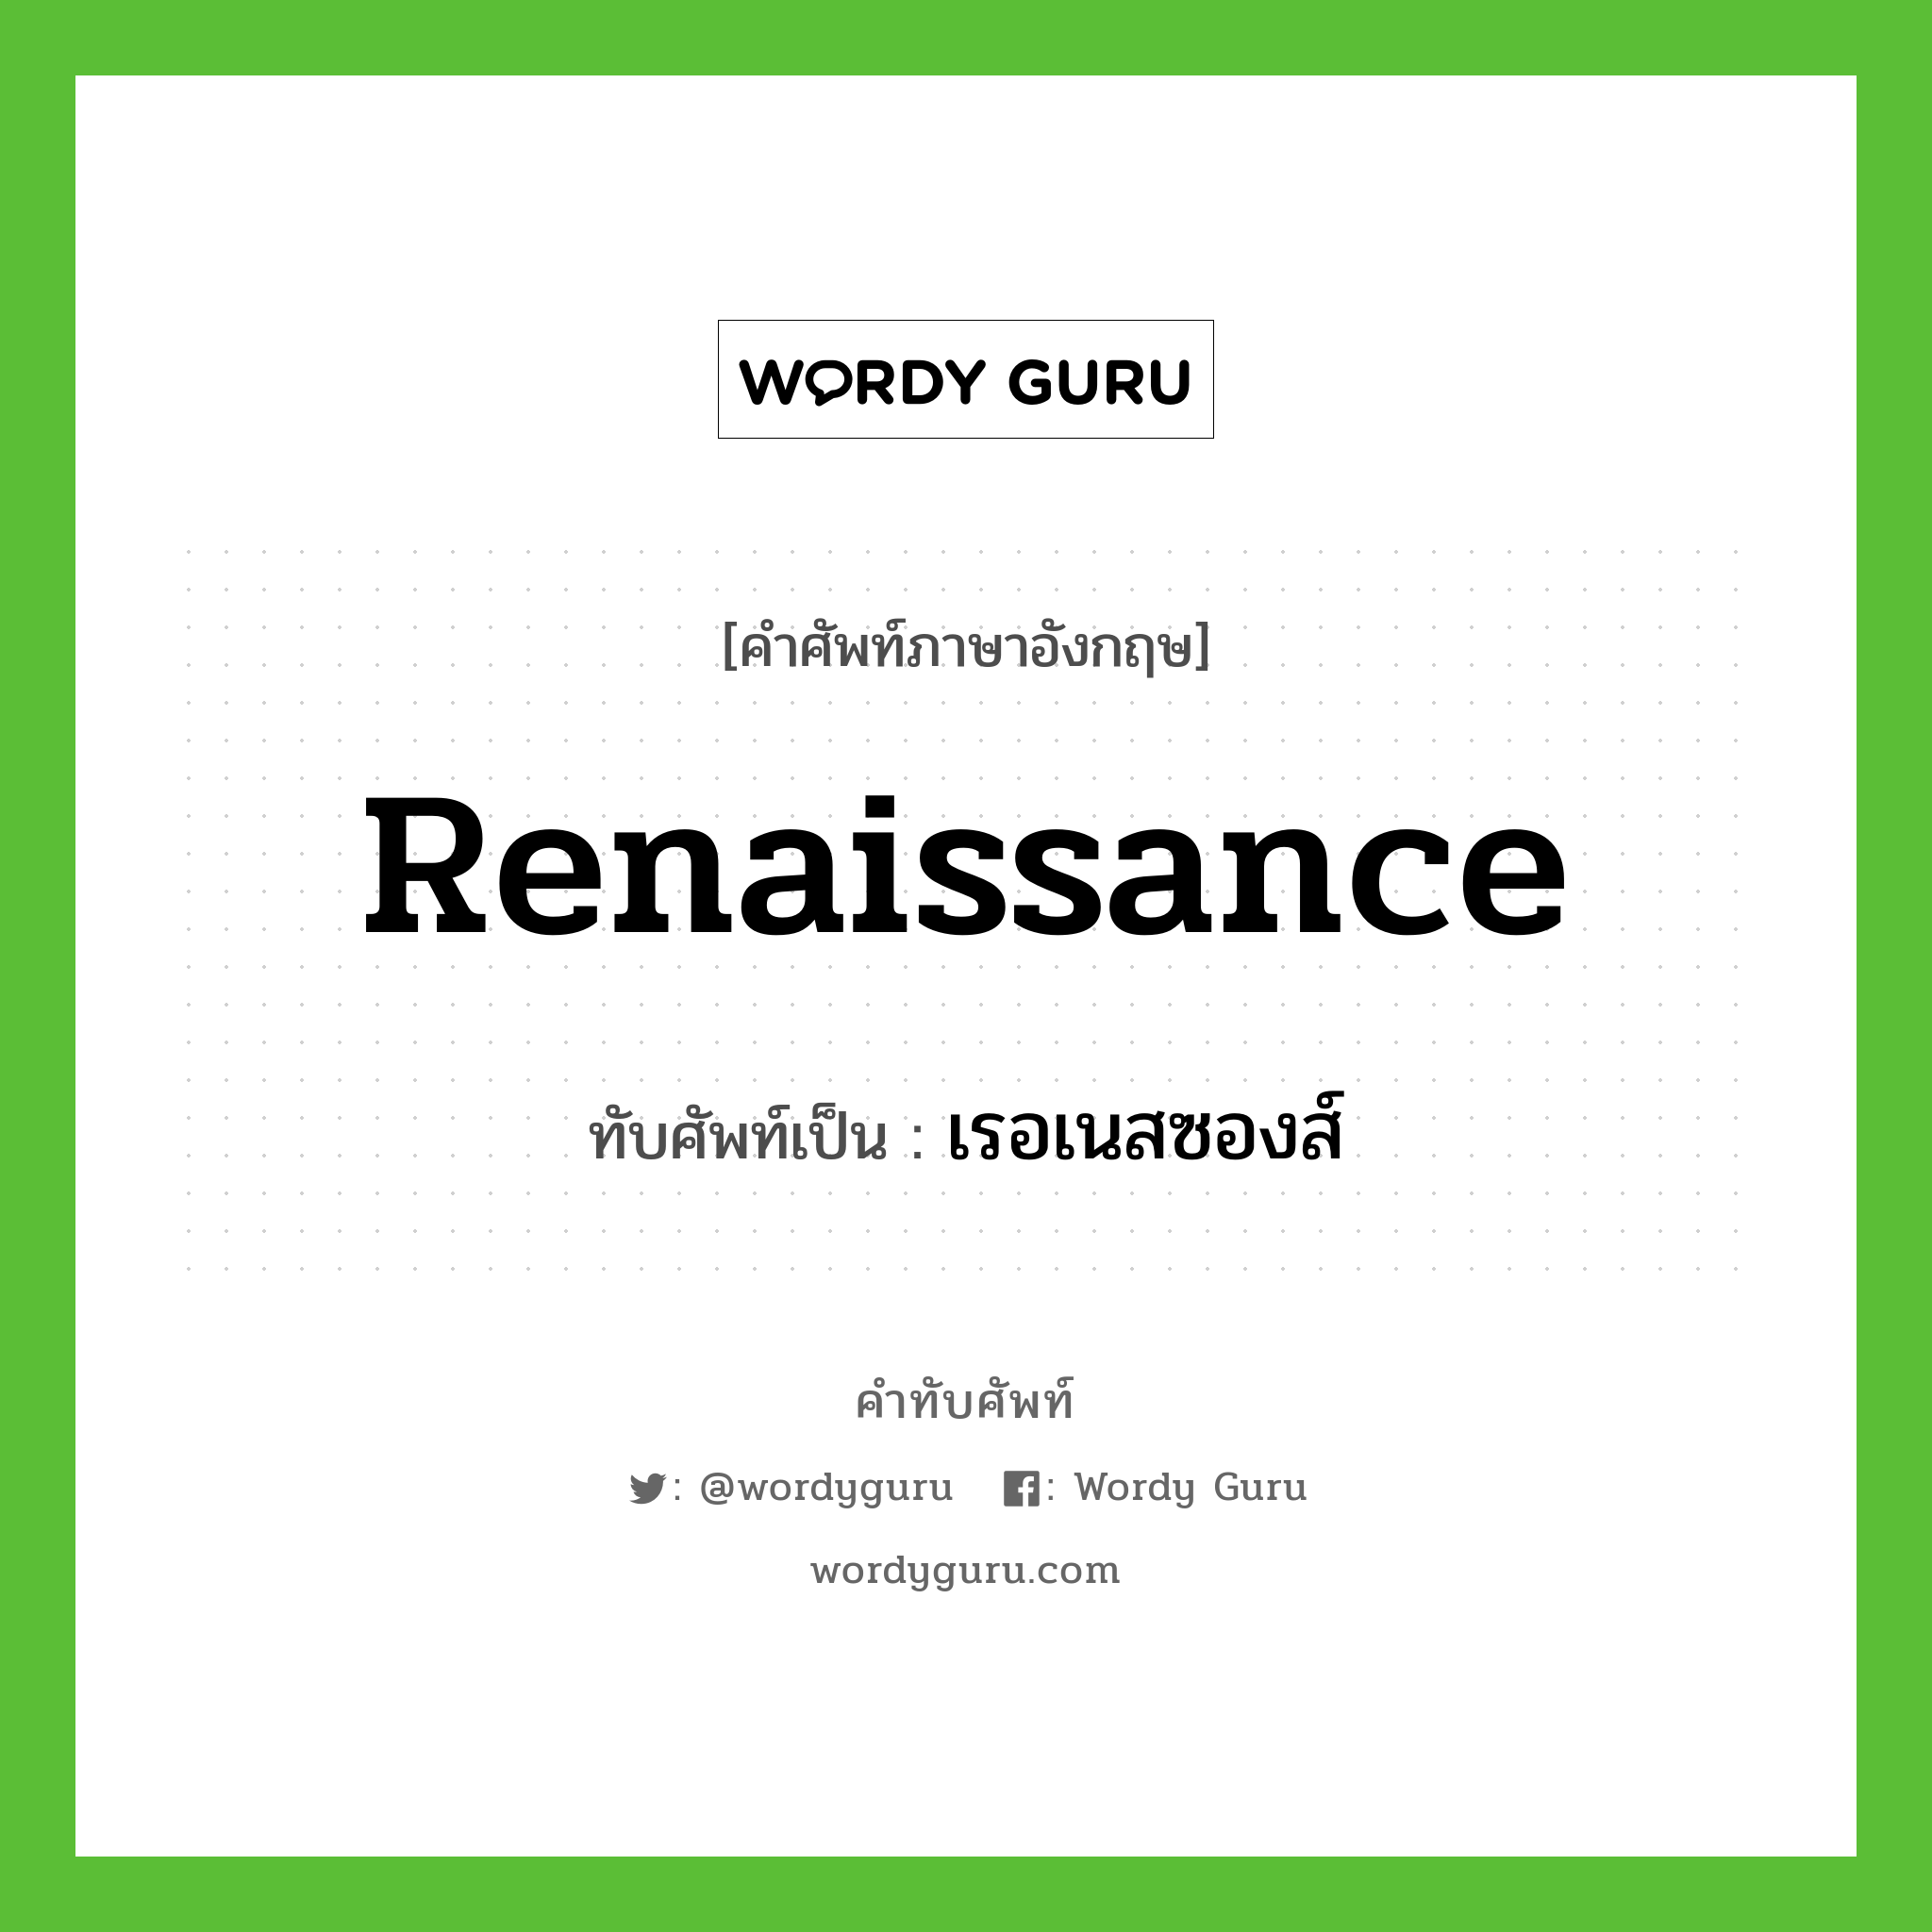 เรอเนสซองส์ เขียนอย่างไร?, คำศัพท์ภาษาอังกฤษ เรอเนสซองส์ ทับศัพท์เป็น Renaissance